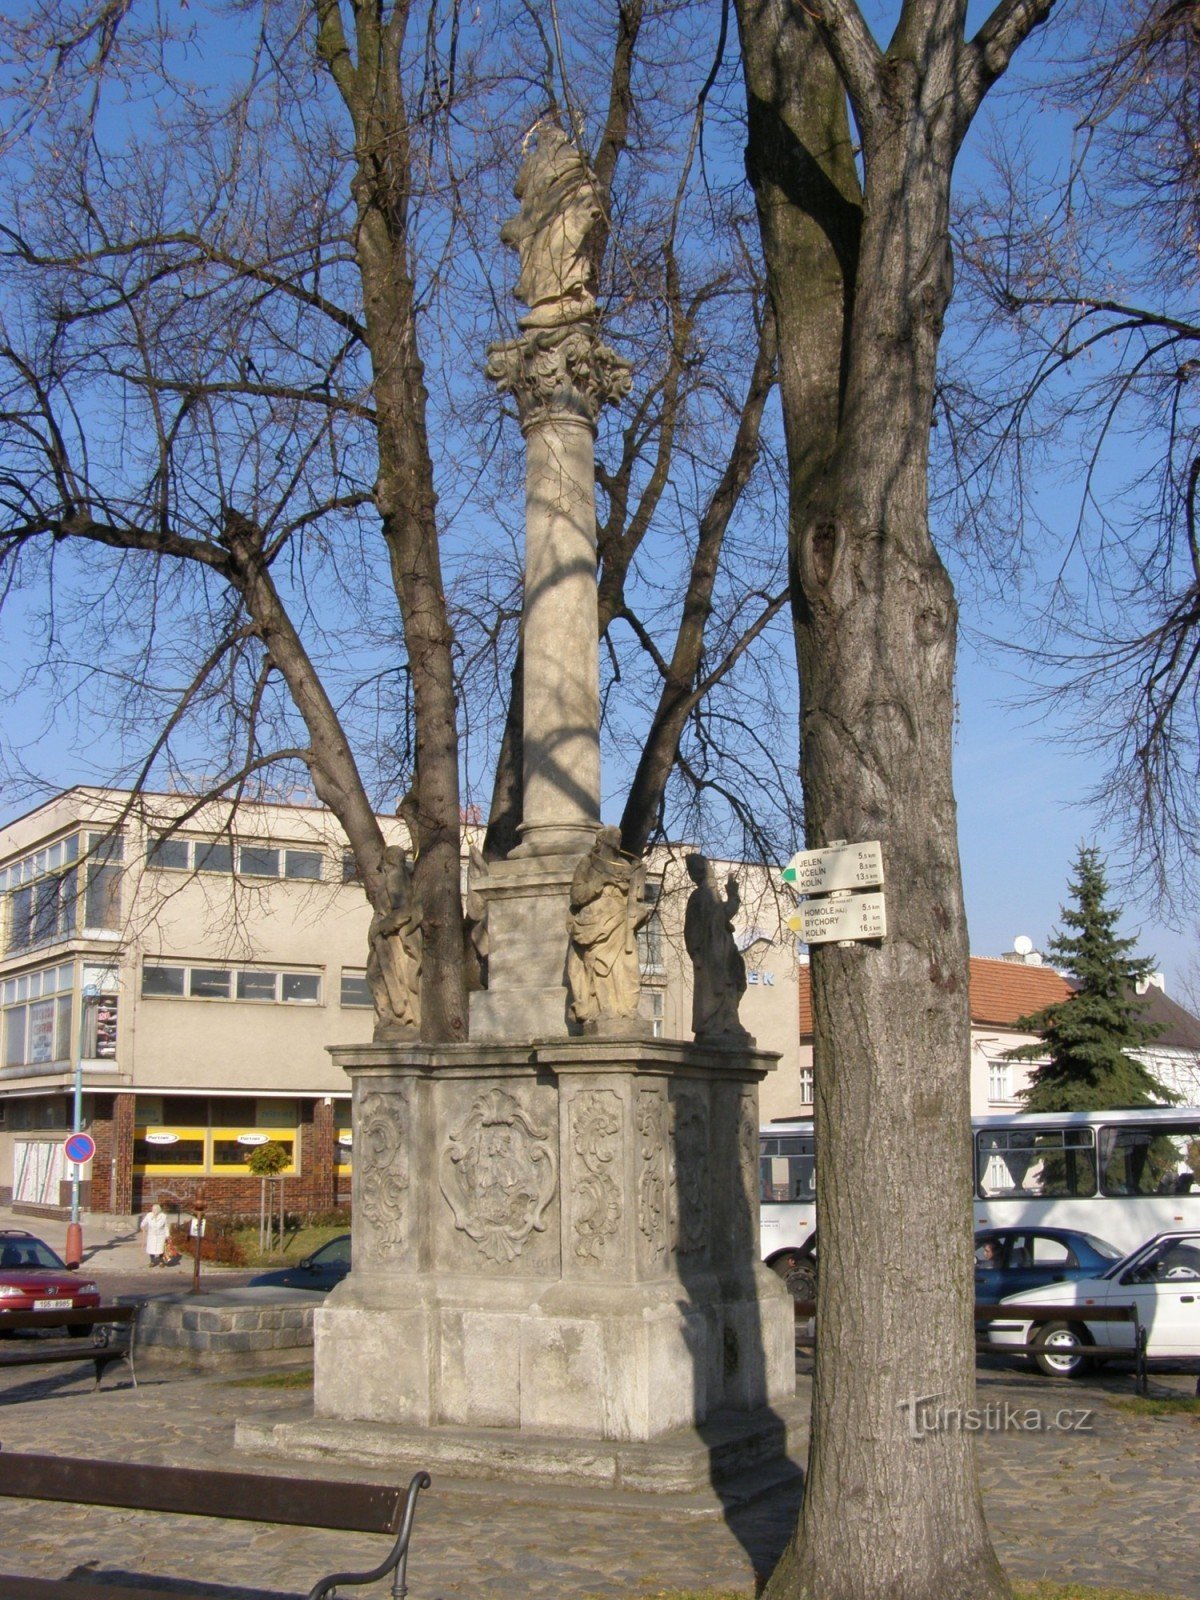 τουριστικό σταυροδρόμι Týnec nad Labem - πλατεία